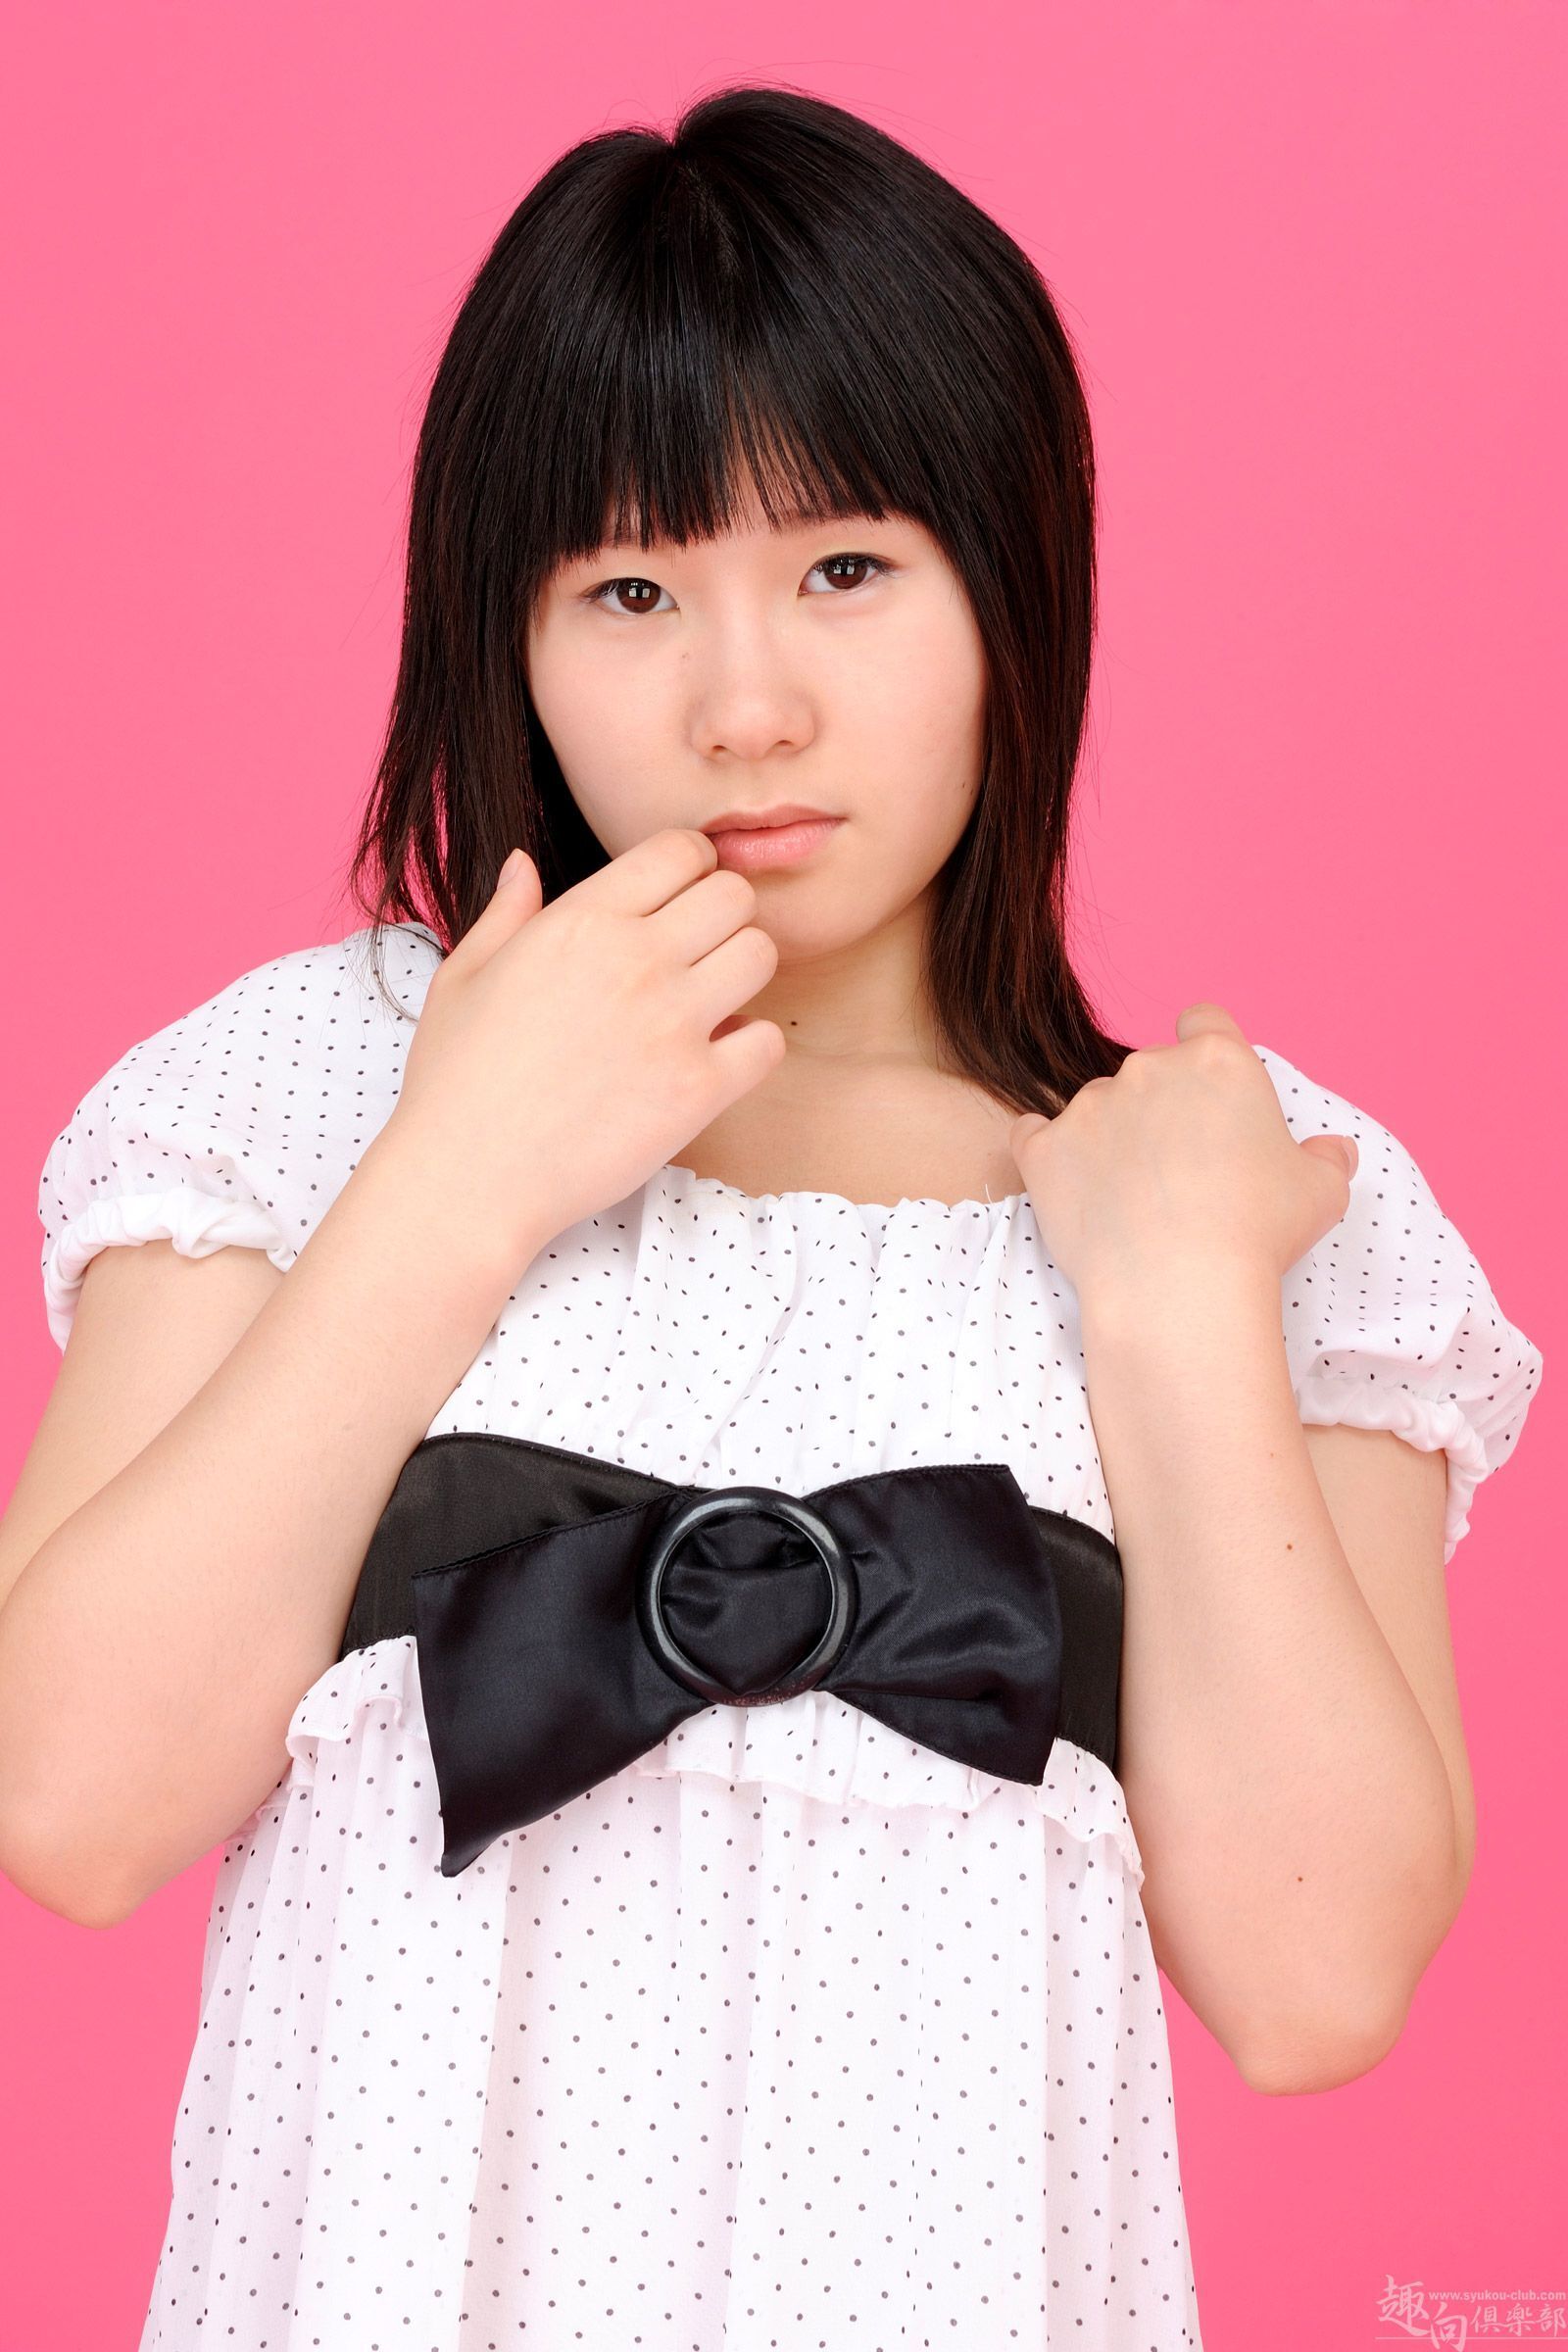 Syukou club, 18 years old, digi-girl104, November 29, 2012